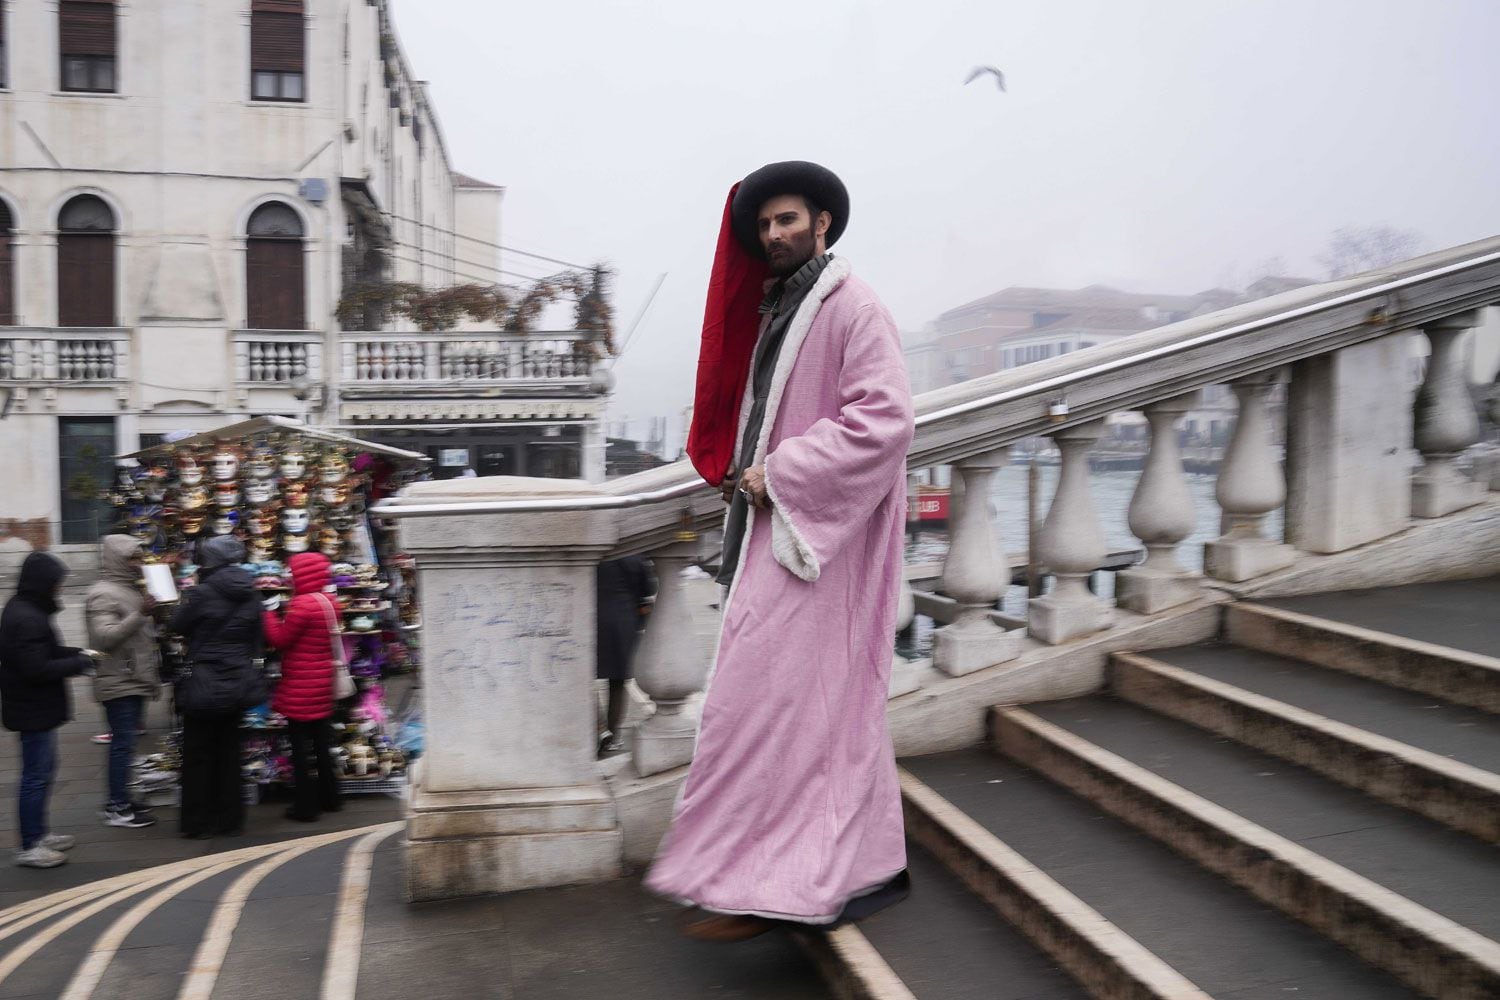 Un hombre disfrazado de Marco Polo baja las escaleras de un puente durante la inauguración del Carnaval, en Venecia, Italia.